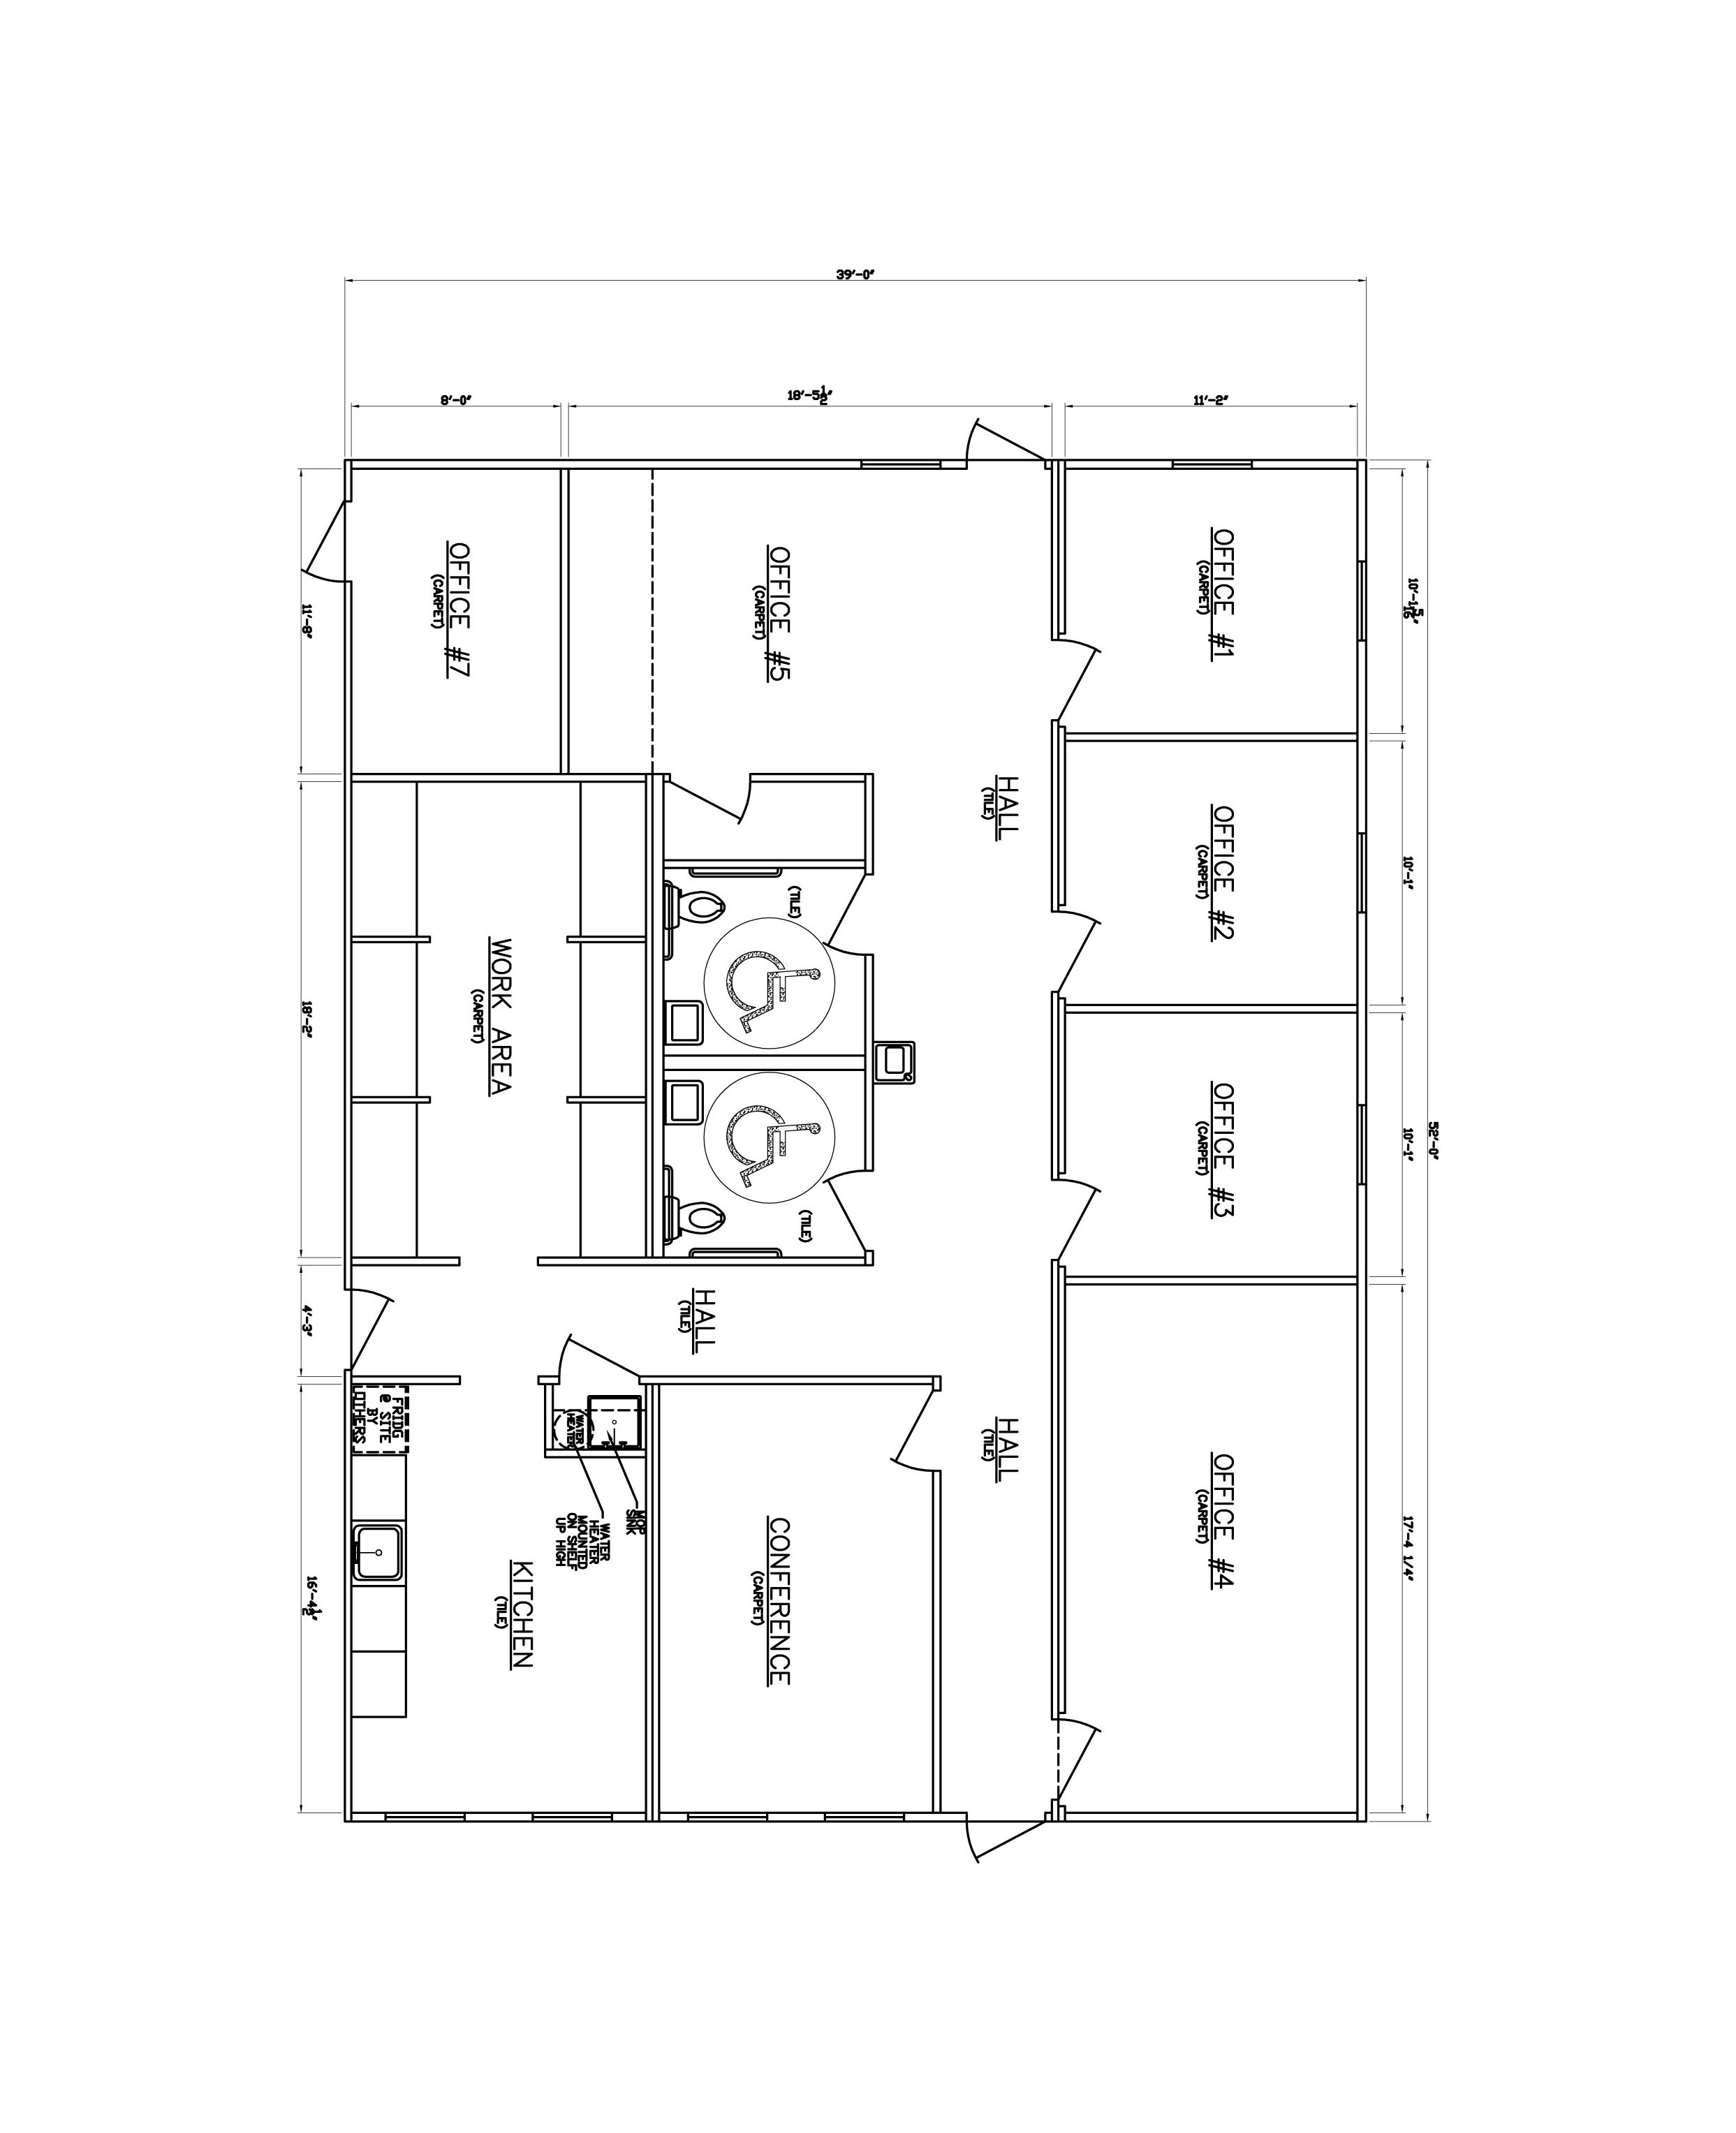 2 Storey Commercial Building Floor Plan